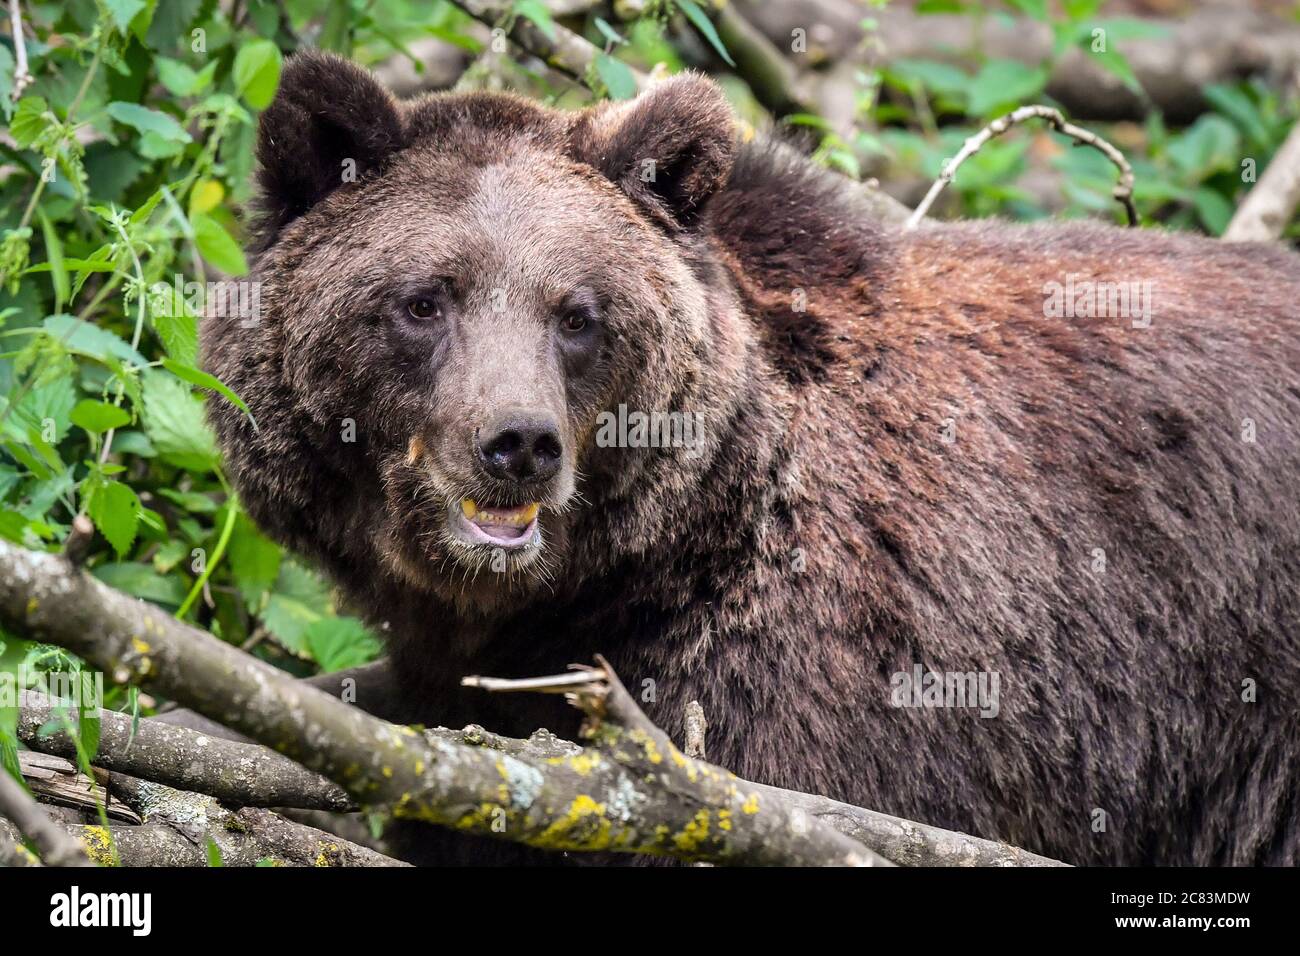 Europäische Braunbären beim Wild Place Project in Bristol, um den 1. Jahrestag der Eröffnung von Bear Wood zu feiern, der größten Ausstellung britischer Braunbären, in der sie neben Wölfen, Luchsen und Vielfraß leben, wie sie es vor Tausenden von Jahren getan hätten. Stockfoto